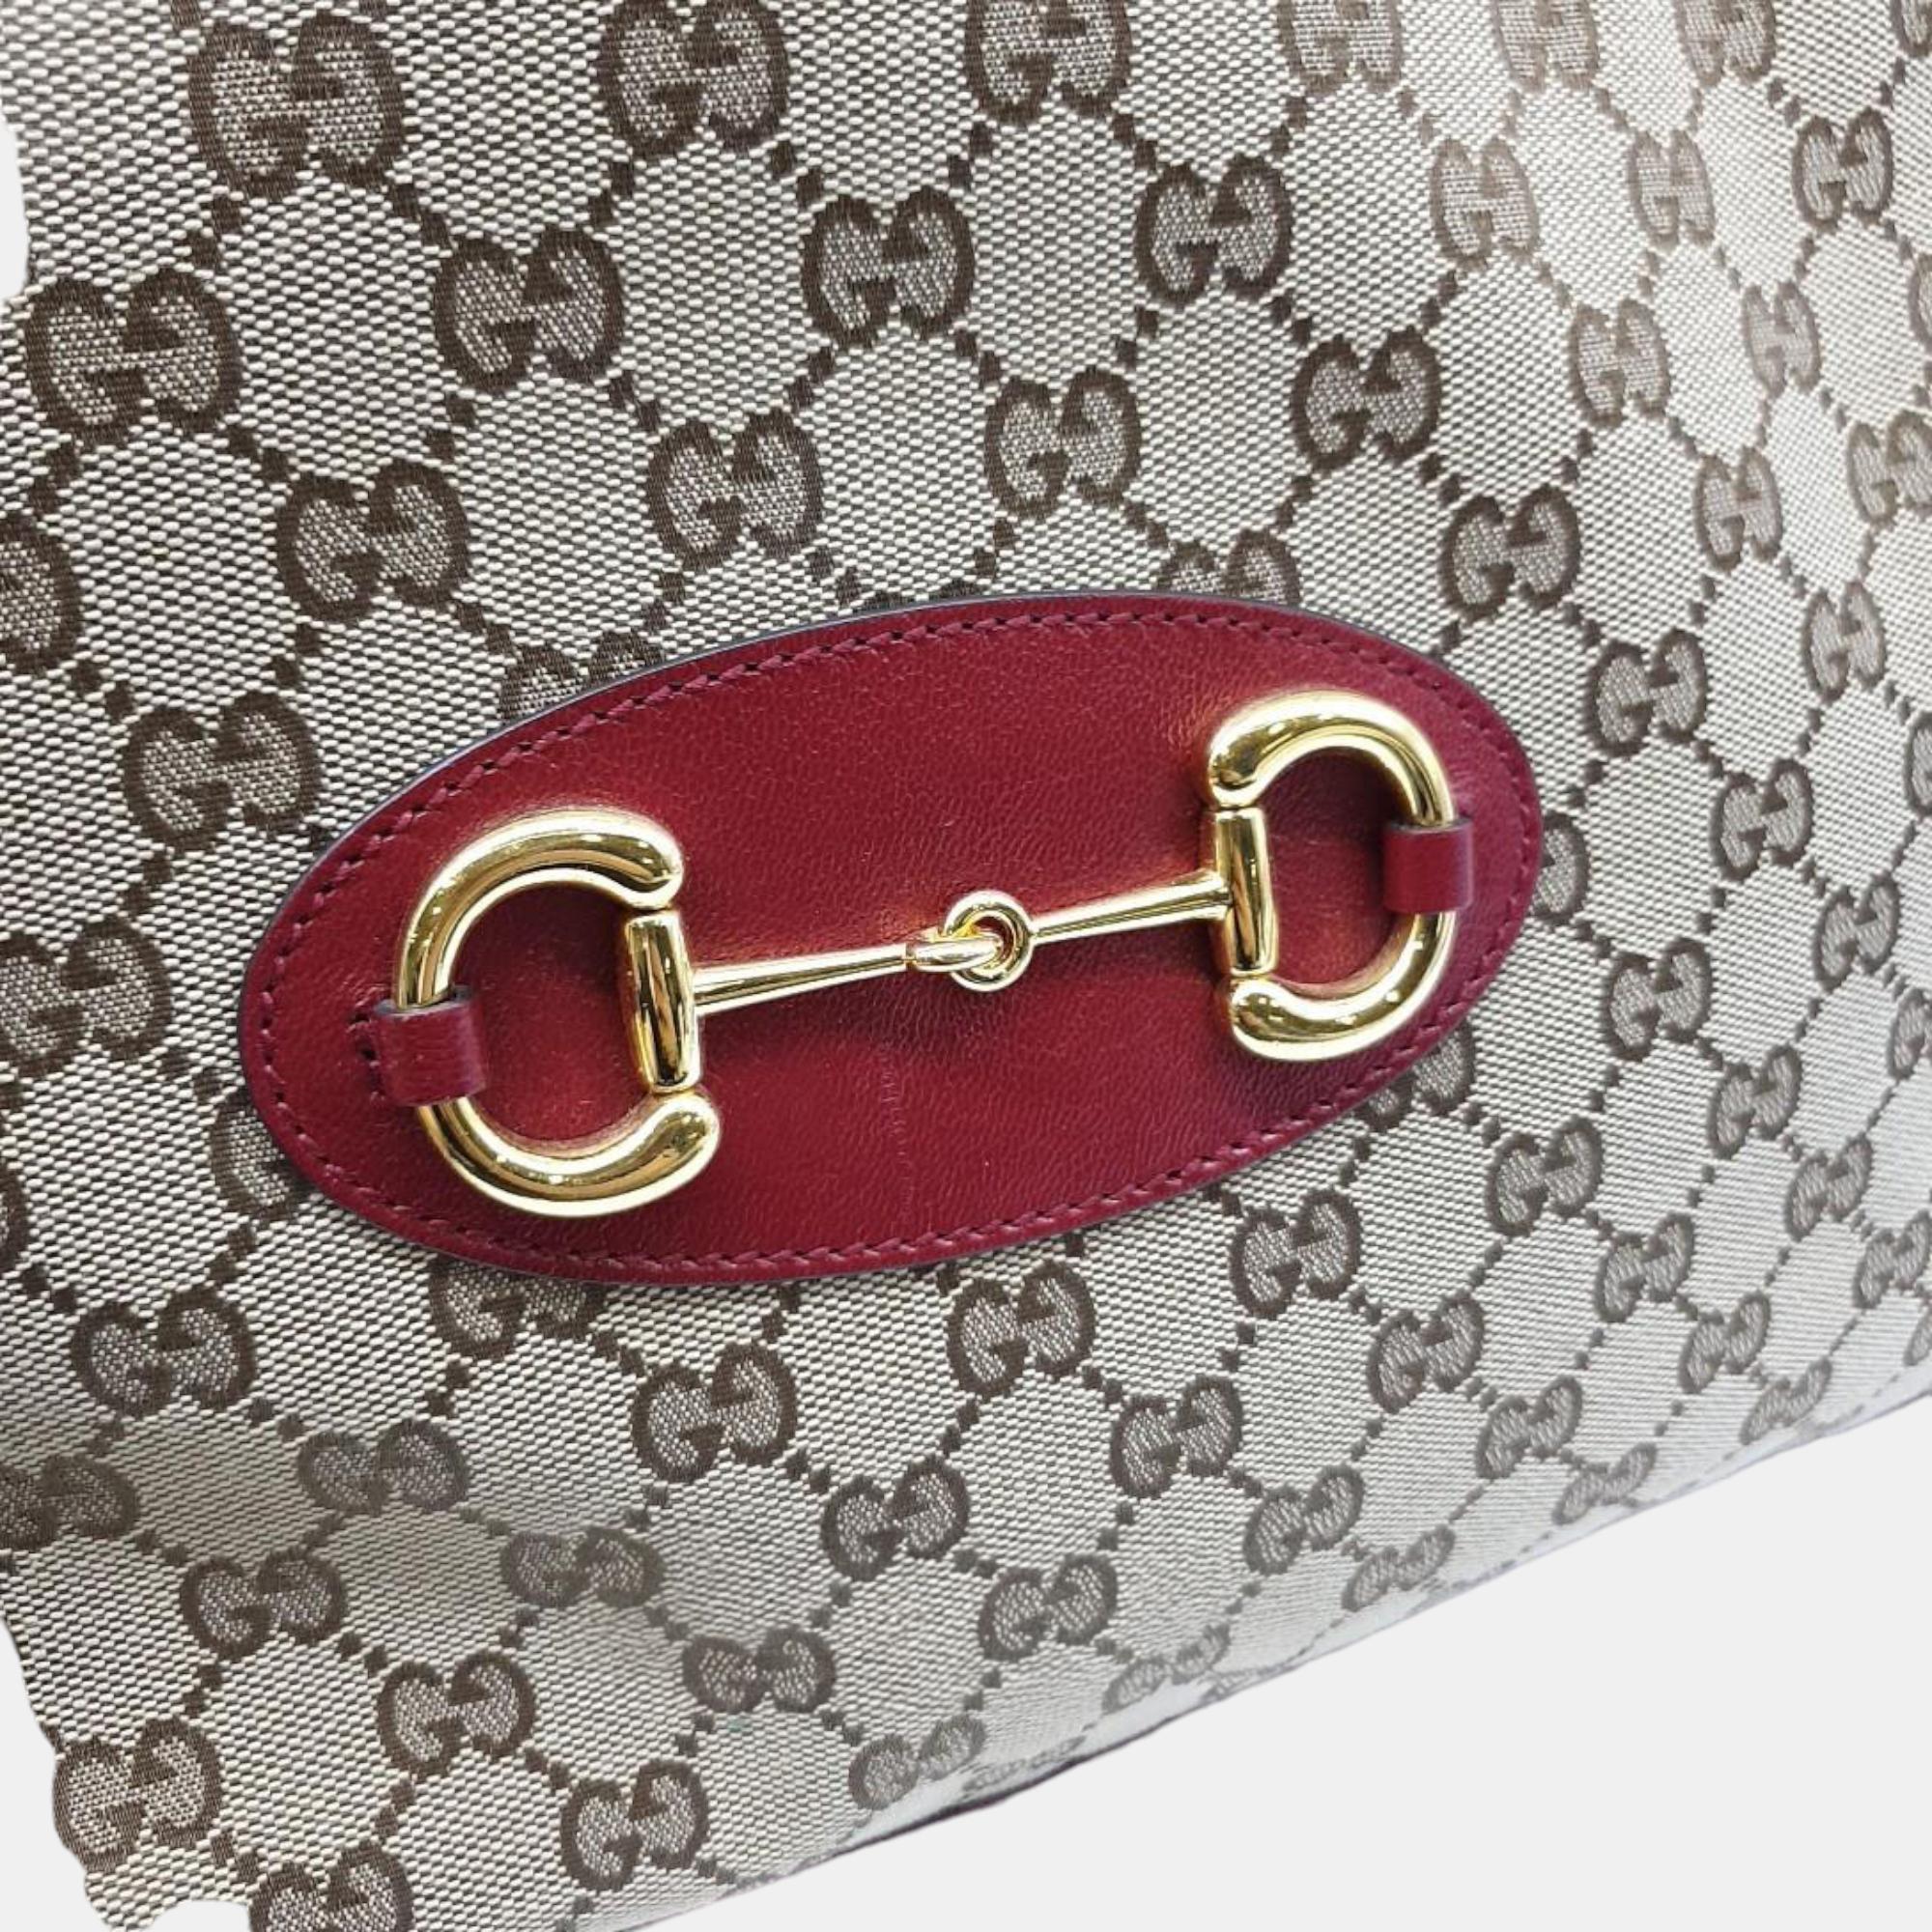 Gucci 1955 Horsebit Medium Tote Bag (621144)